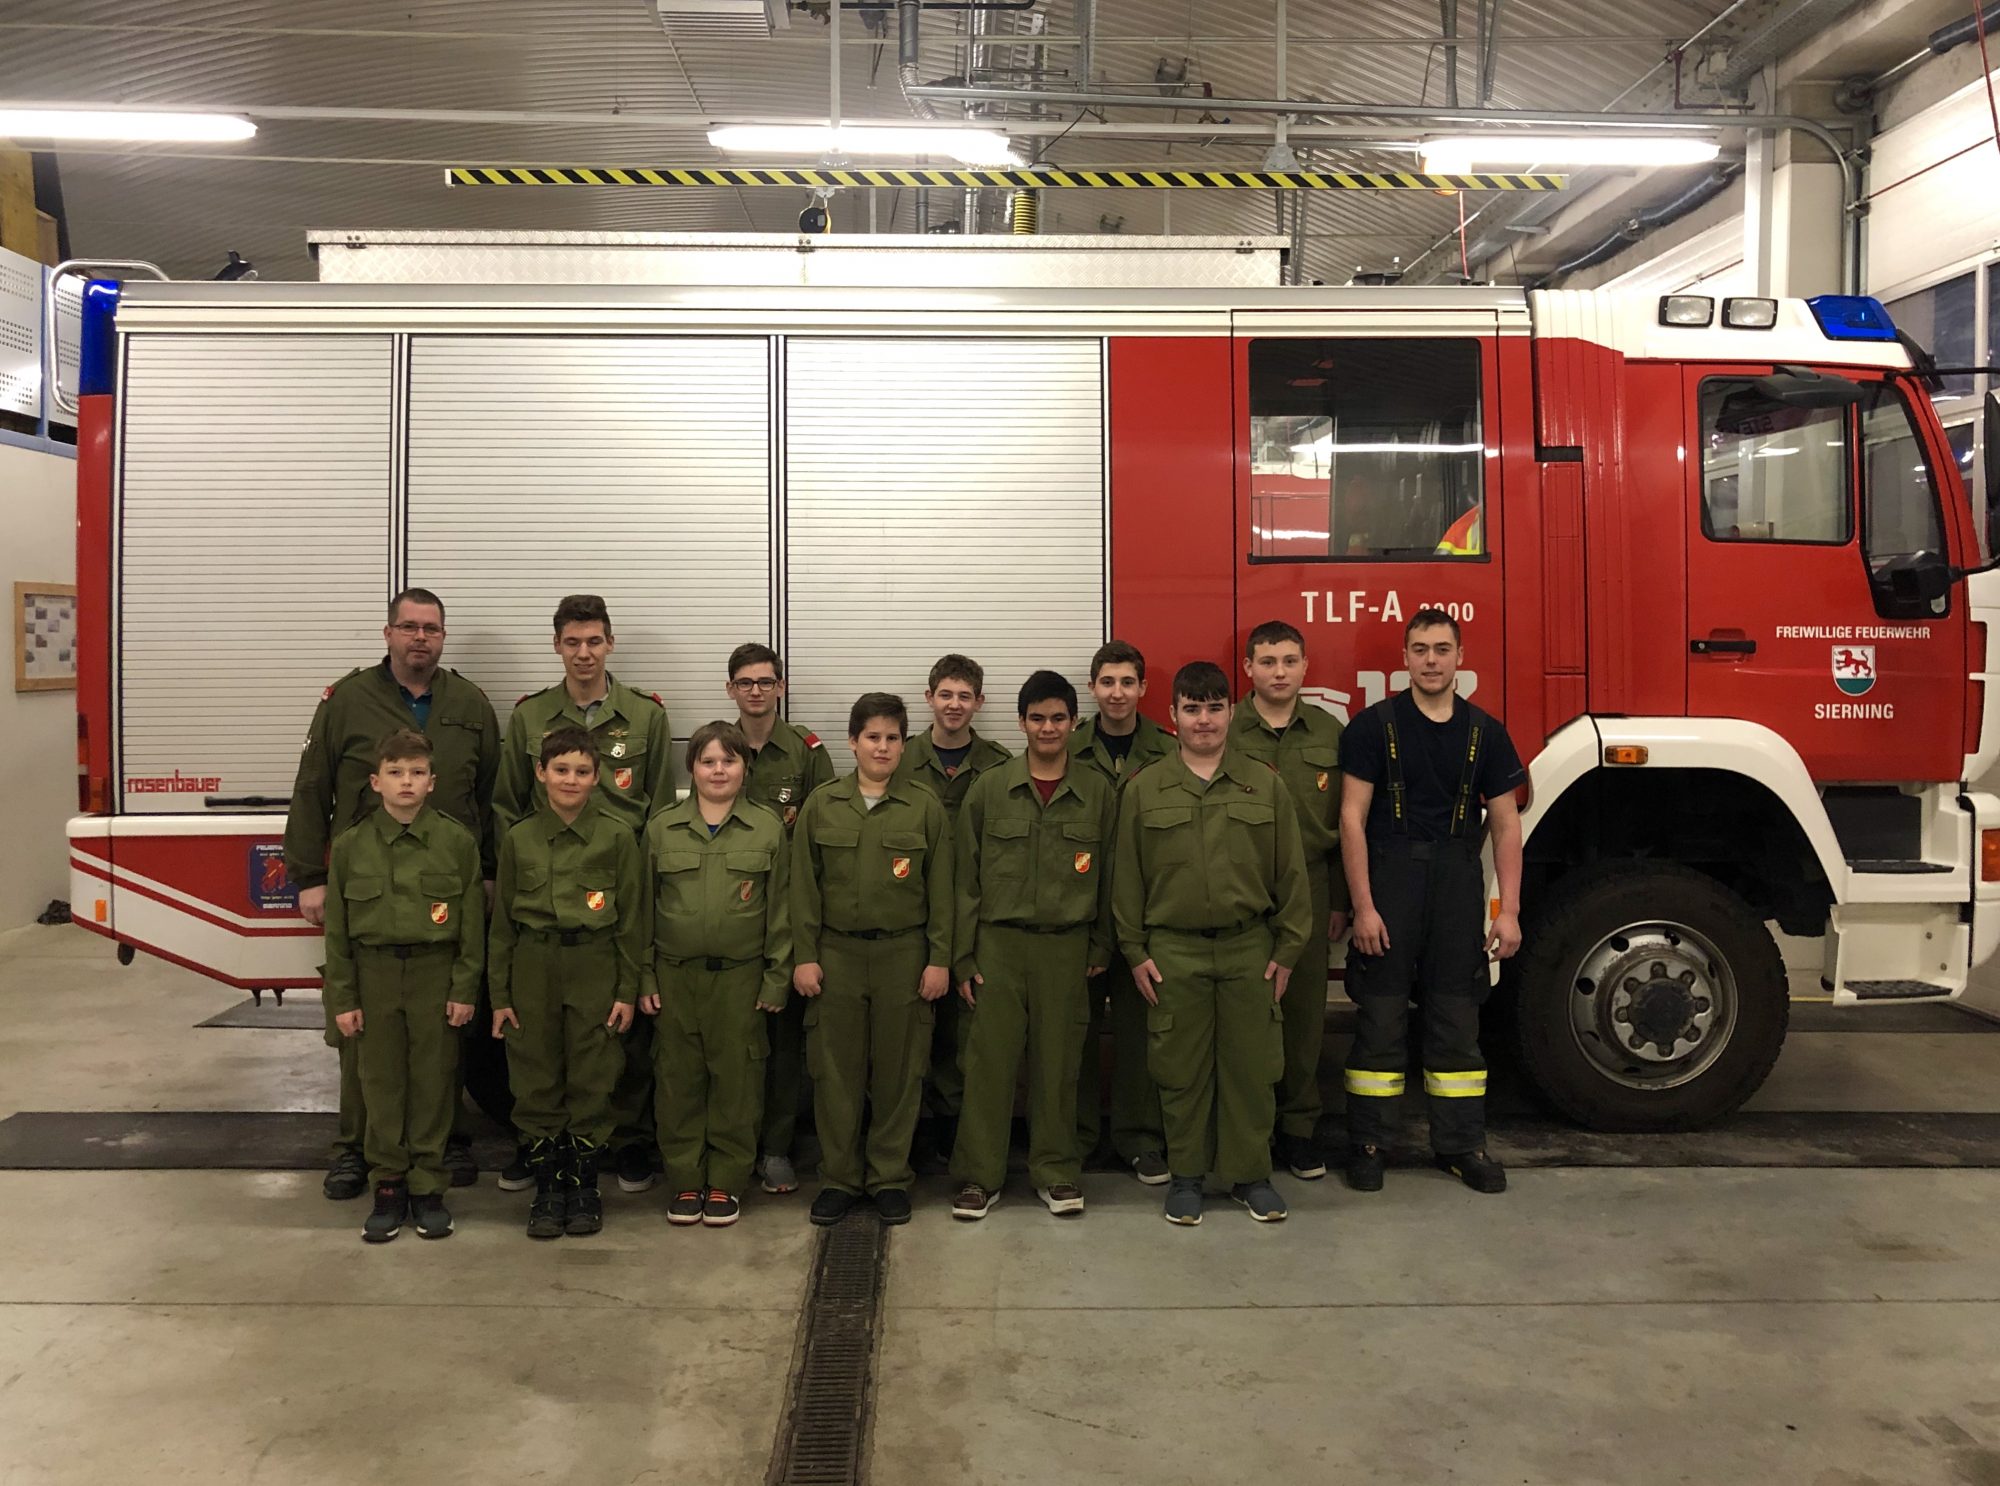 Jugendgruppe der Freiwilligen Feuerwehr Sierning im Jahr 2019